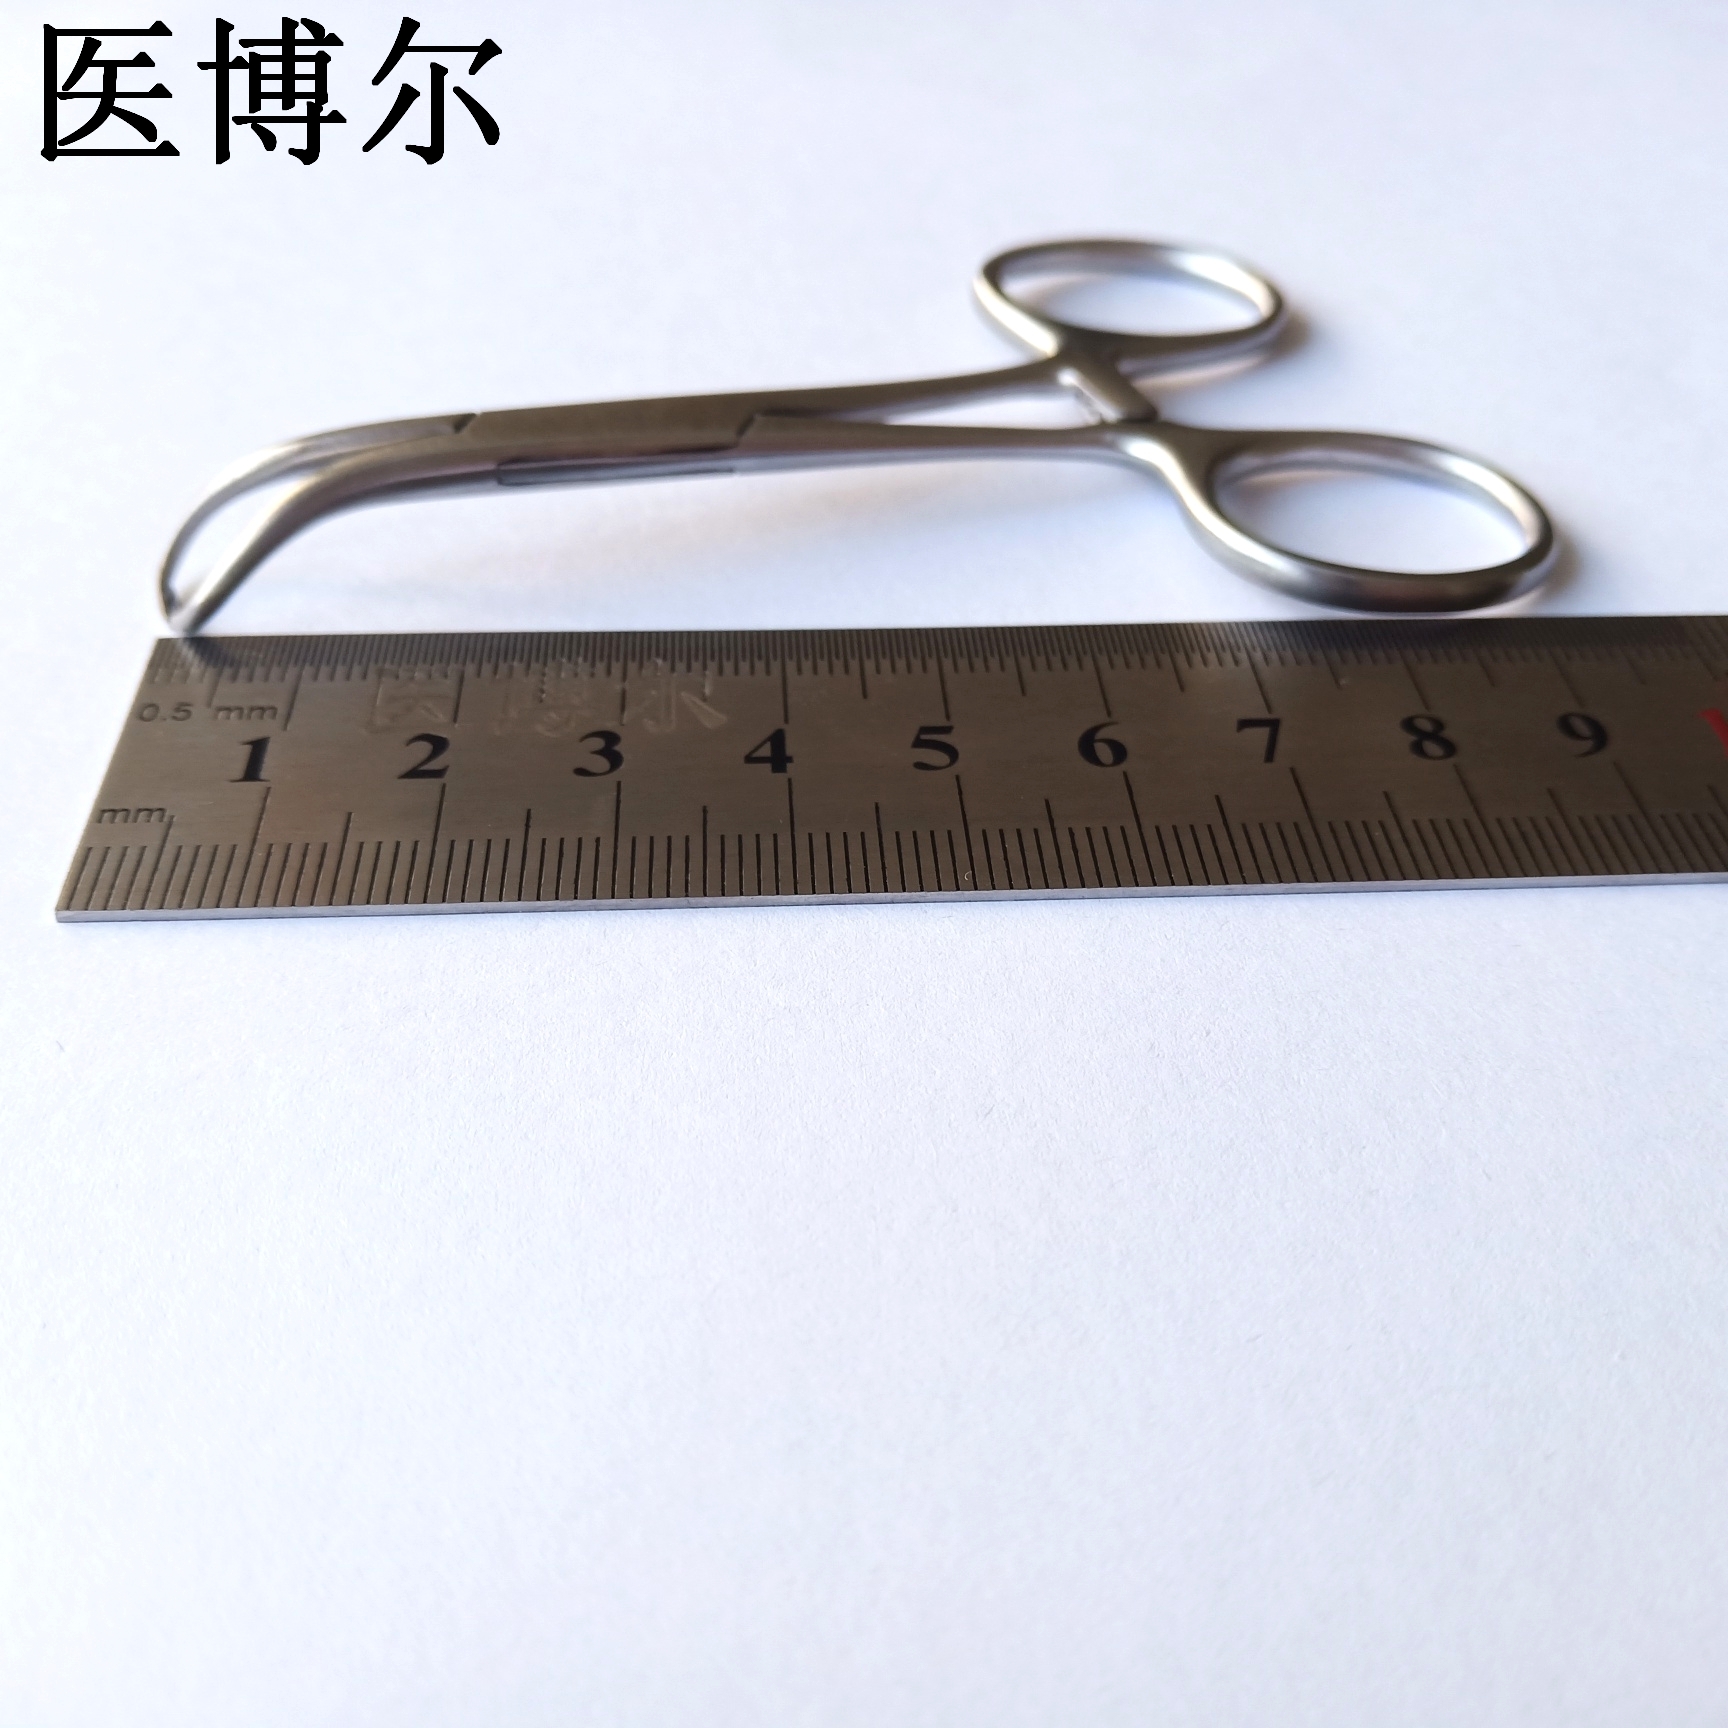 帕巾钳 9cm (1)_看图王.jpg